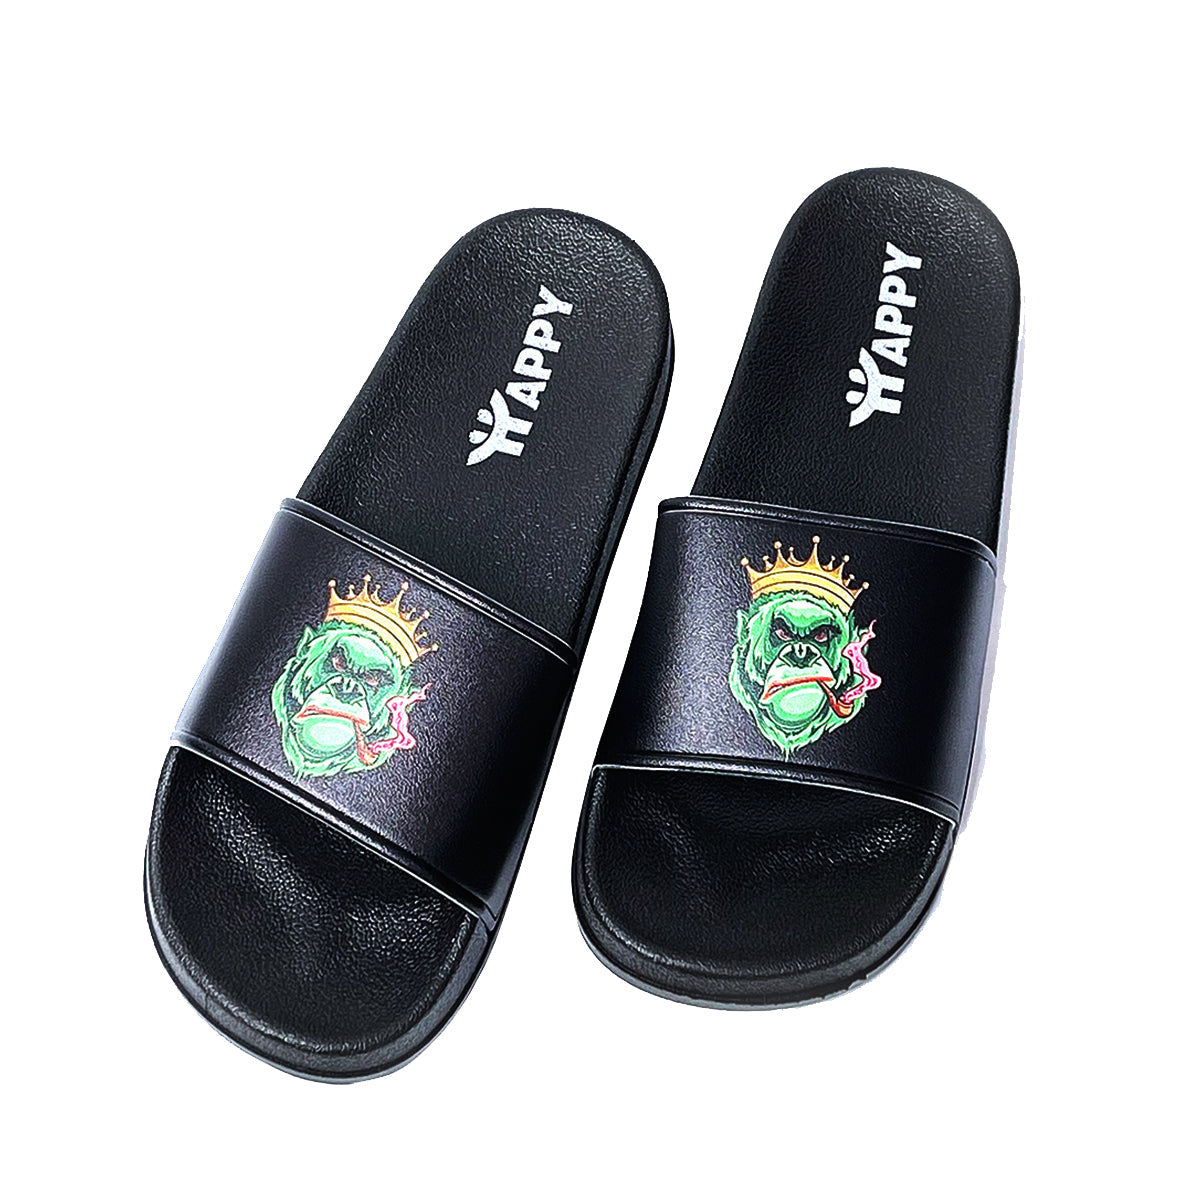 Gorilla King Slide Sandals